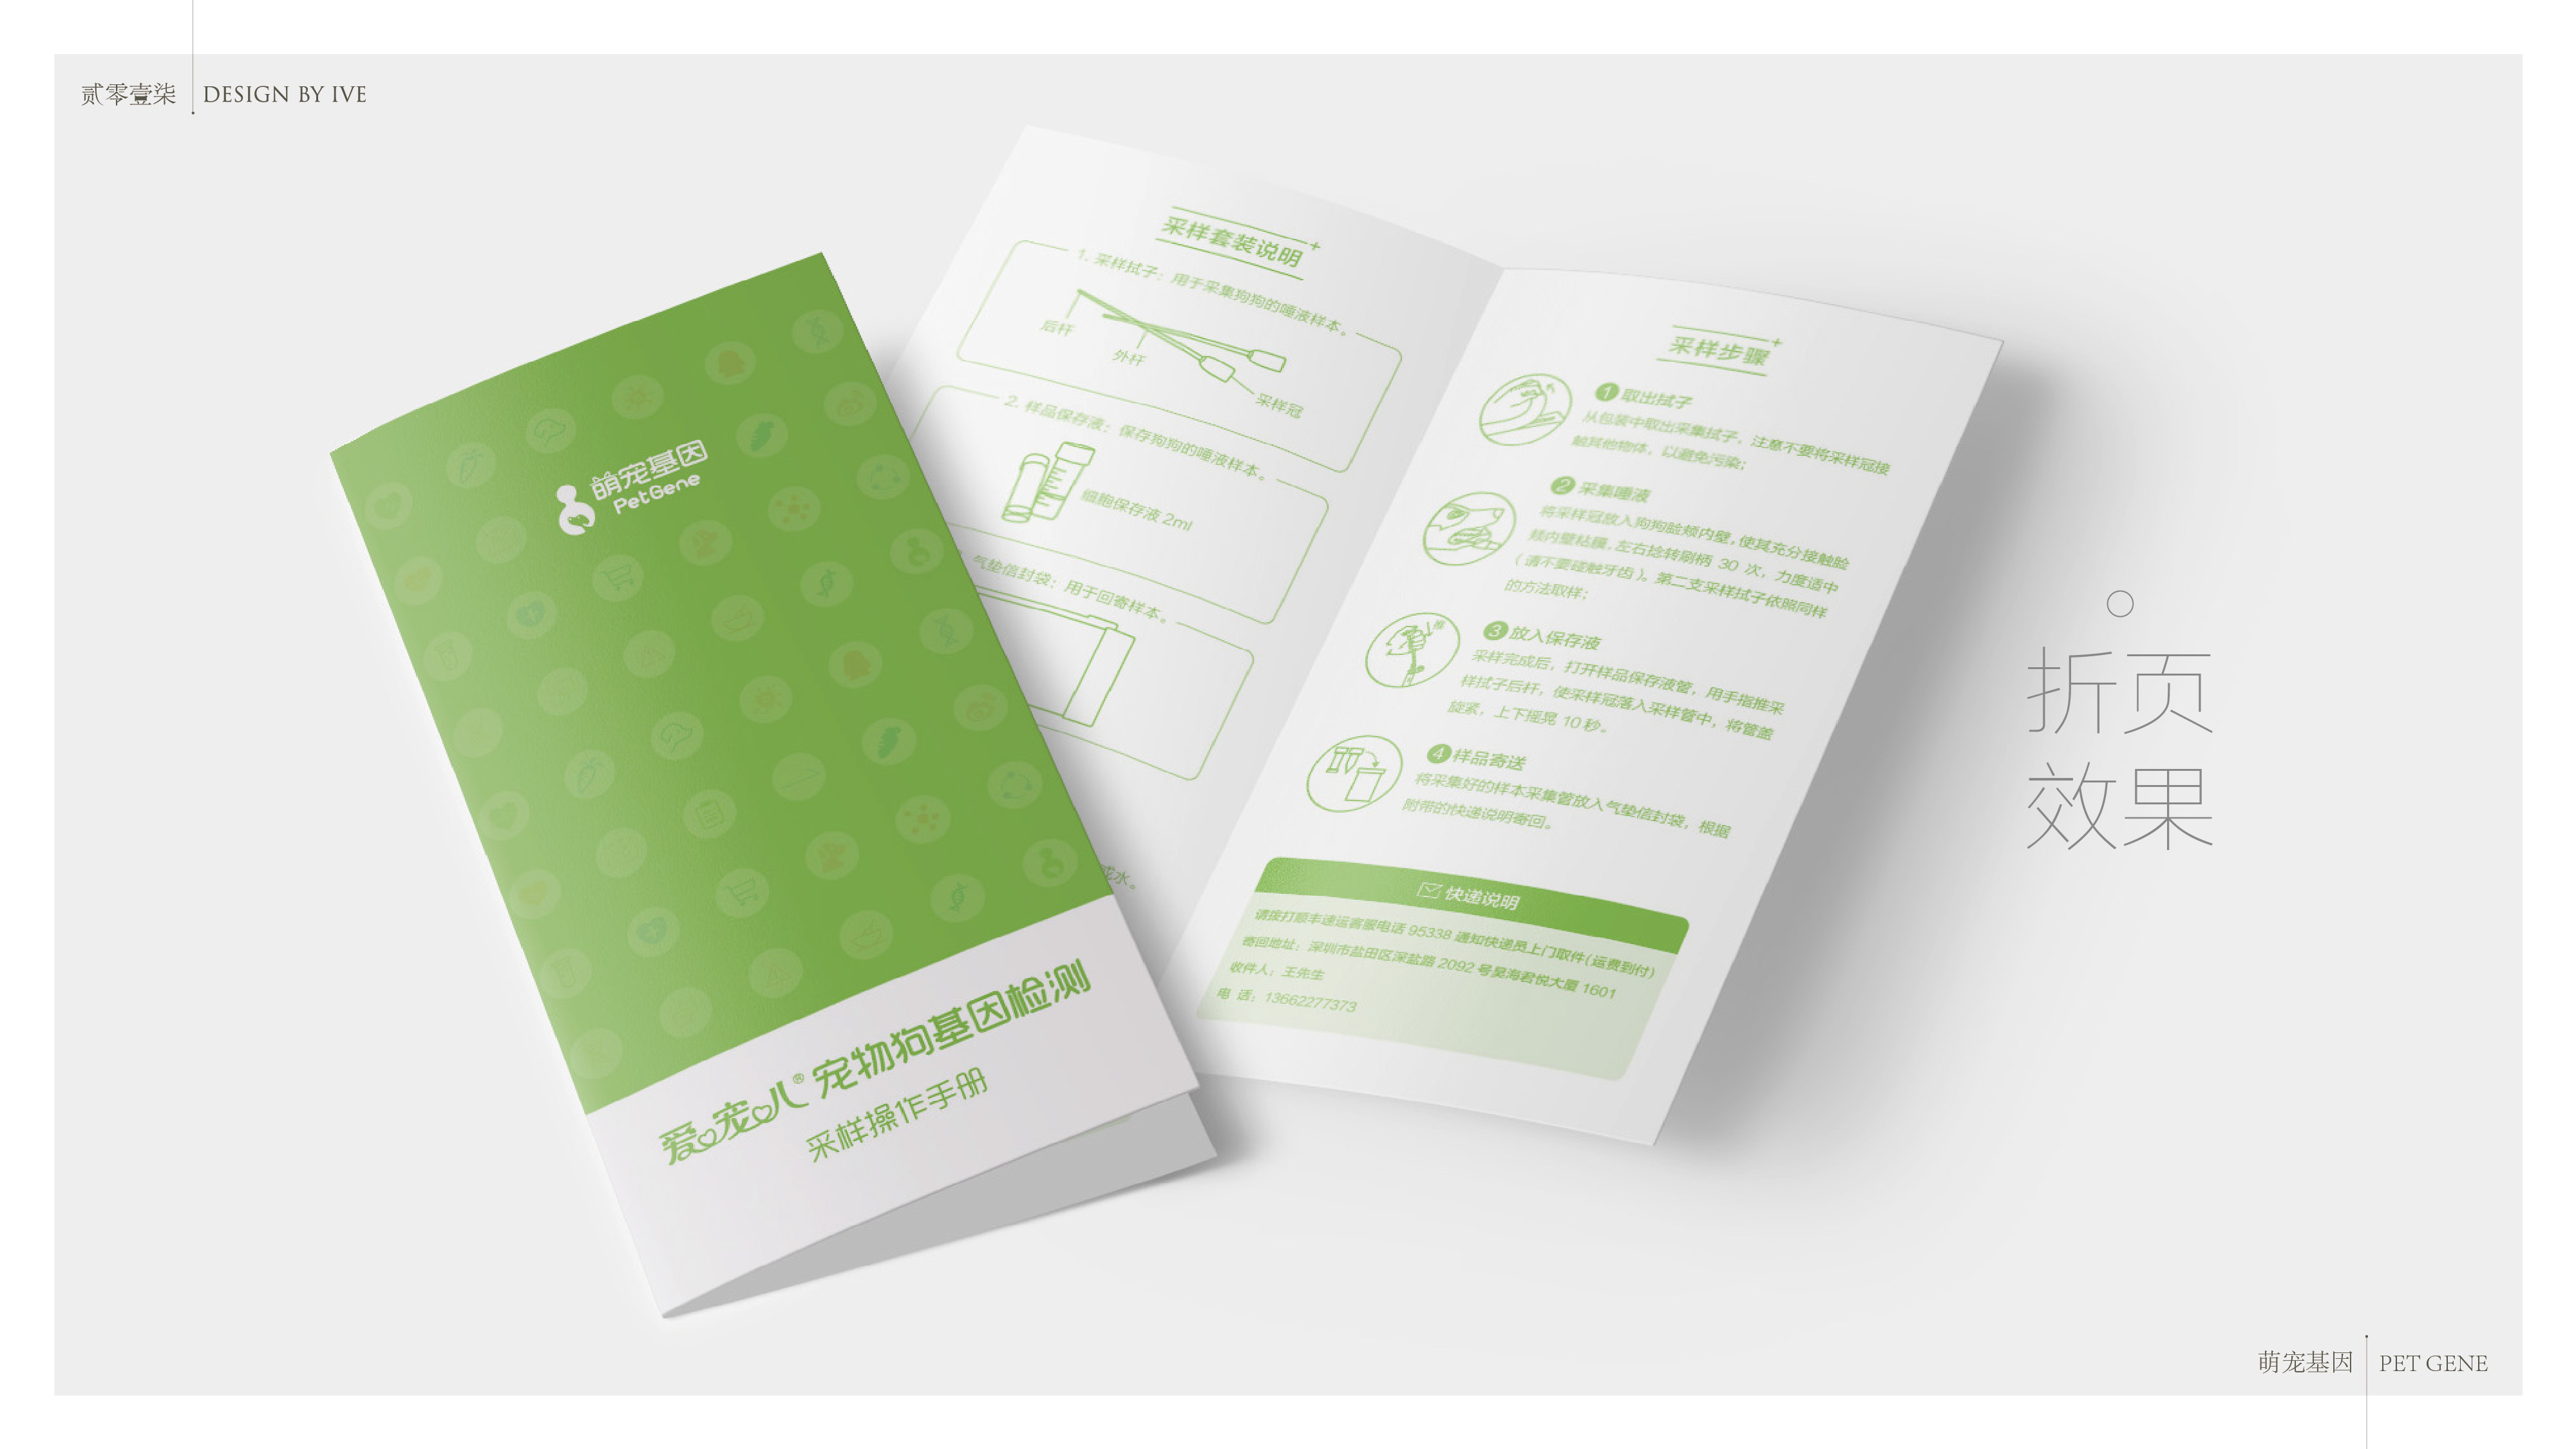 深圳印迹生物公司-宠物产品包装设计方案